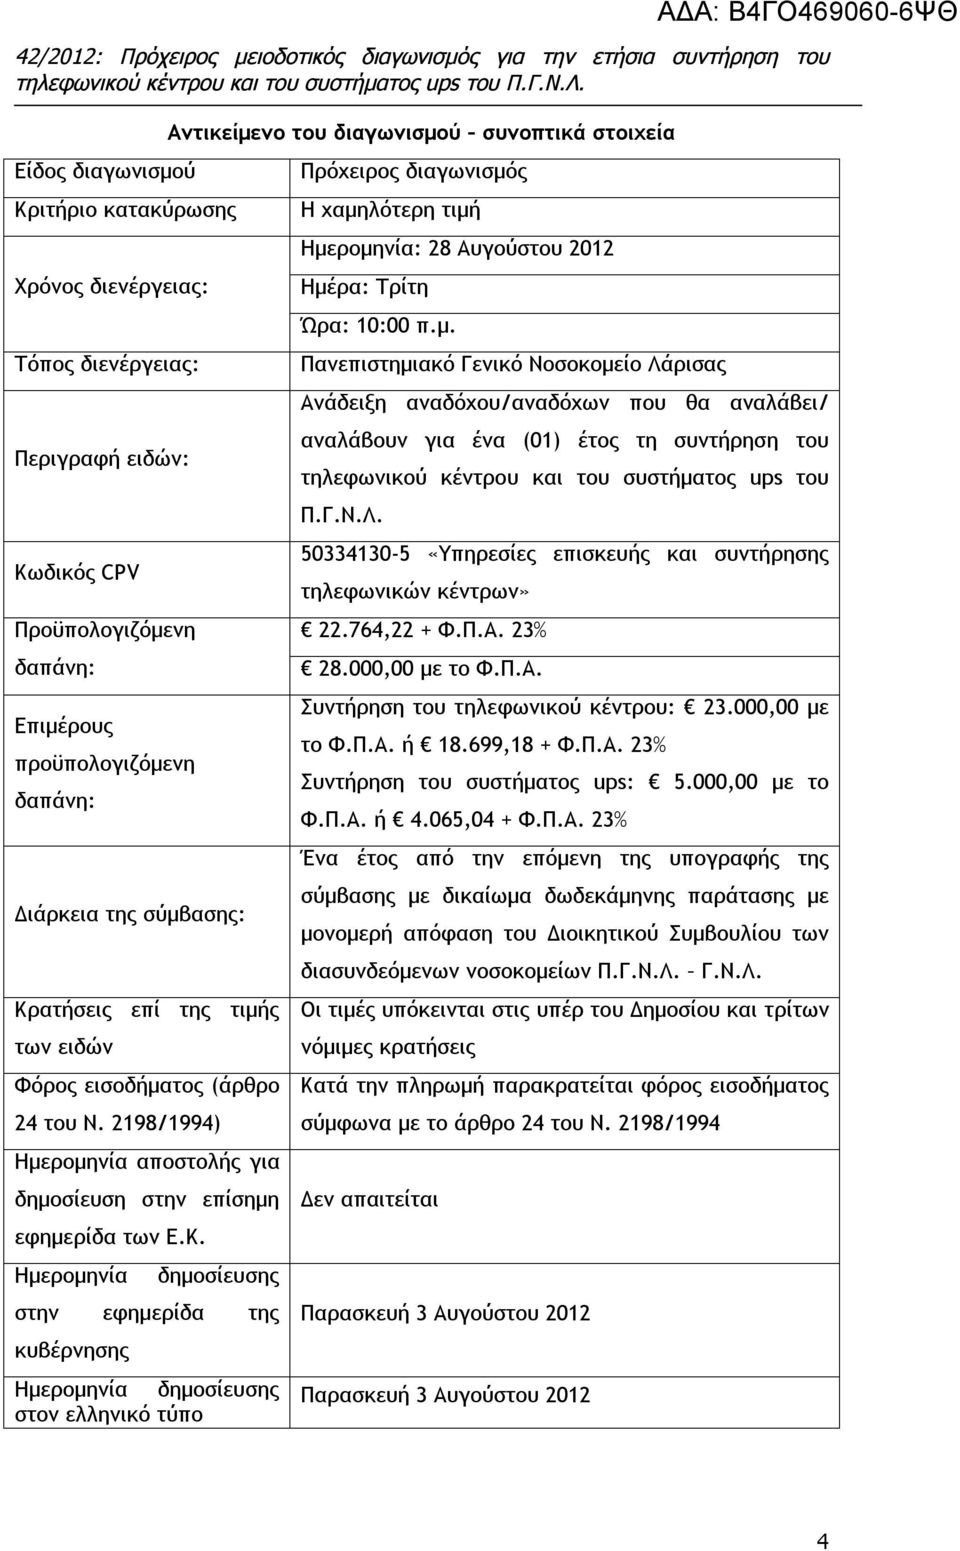 Ημερομηνία Αντικείμενο του διαγωνισμού συνοπτικά στοιχεία δημοσίευσης στην εφημερίδα της κυβέρνησης Ημερομηνία δημοσίευσης στον ελληνικό τύπο Πρόχειρος διαγωνισμός Η χαμηλότερη τιμή Ημερομηνία: 28